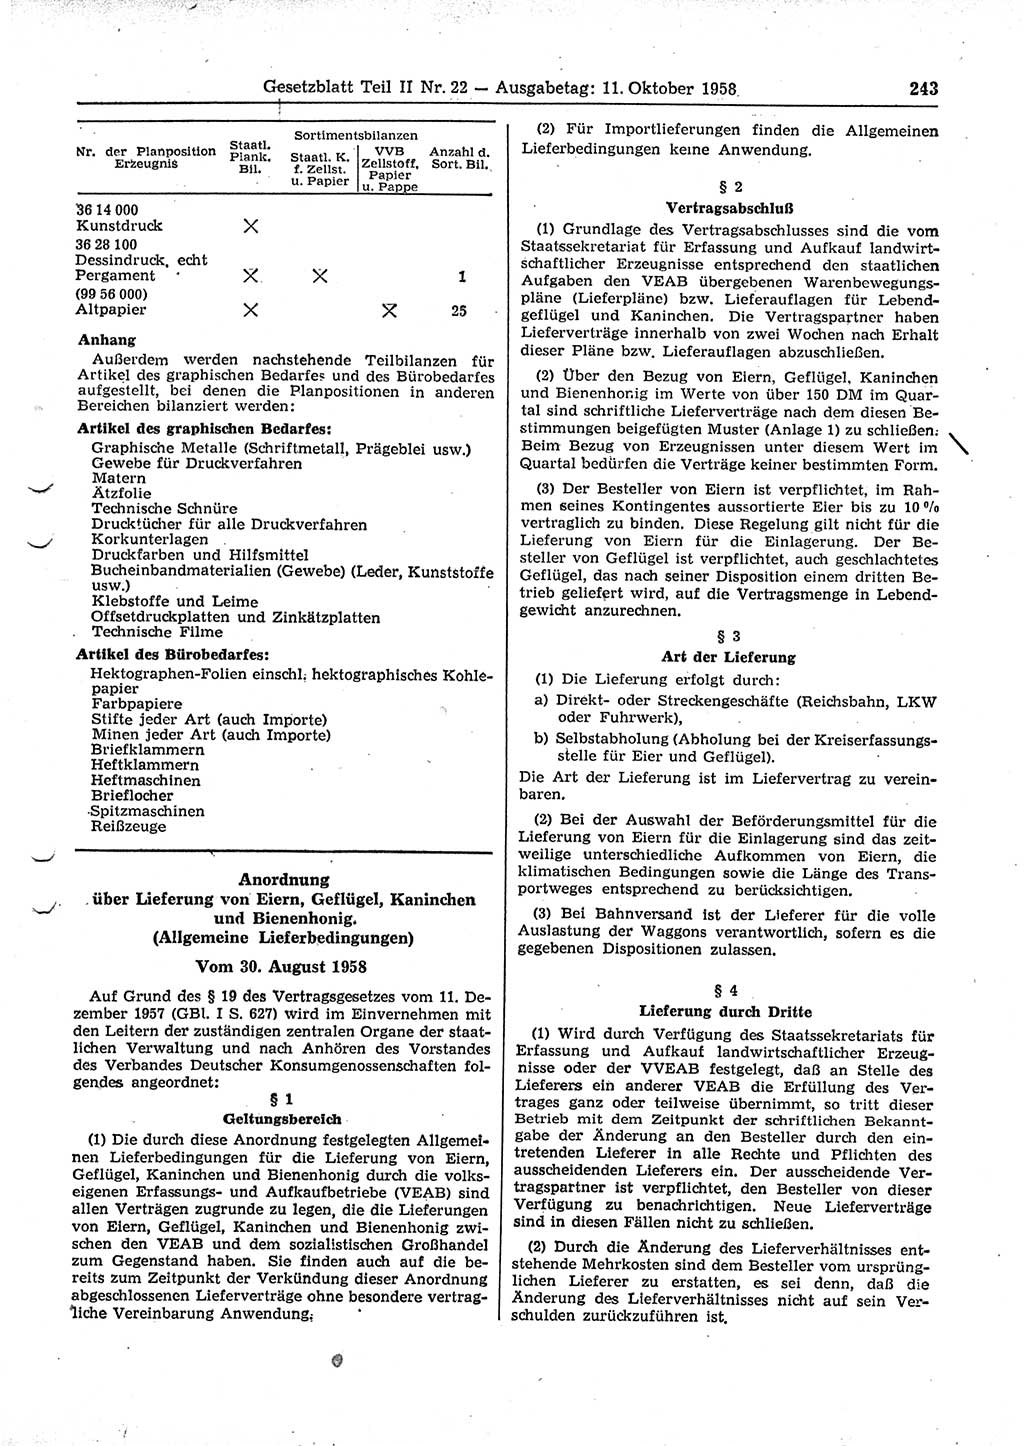 Gesetzblatt (GBl.) der Deutschen Demokratischen Republik (DDR) Teil ⅠⅠ 1958, Seite 243 (GBl. DDR ⅠⅠ 1958, S. 243)